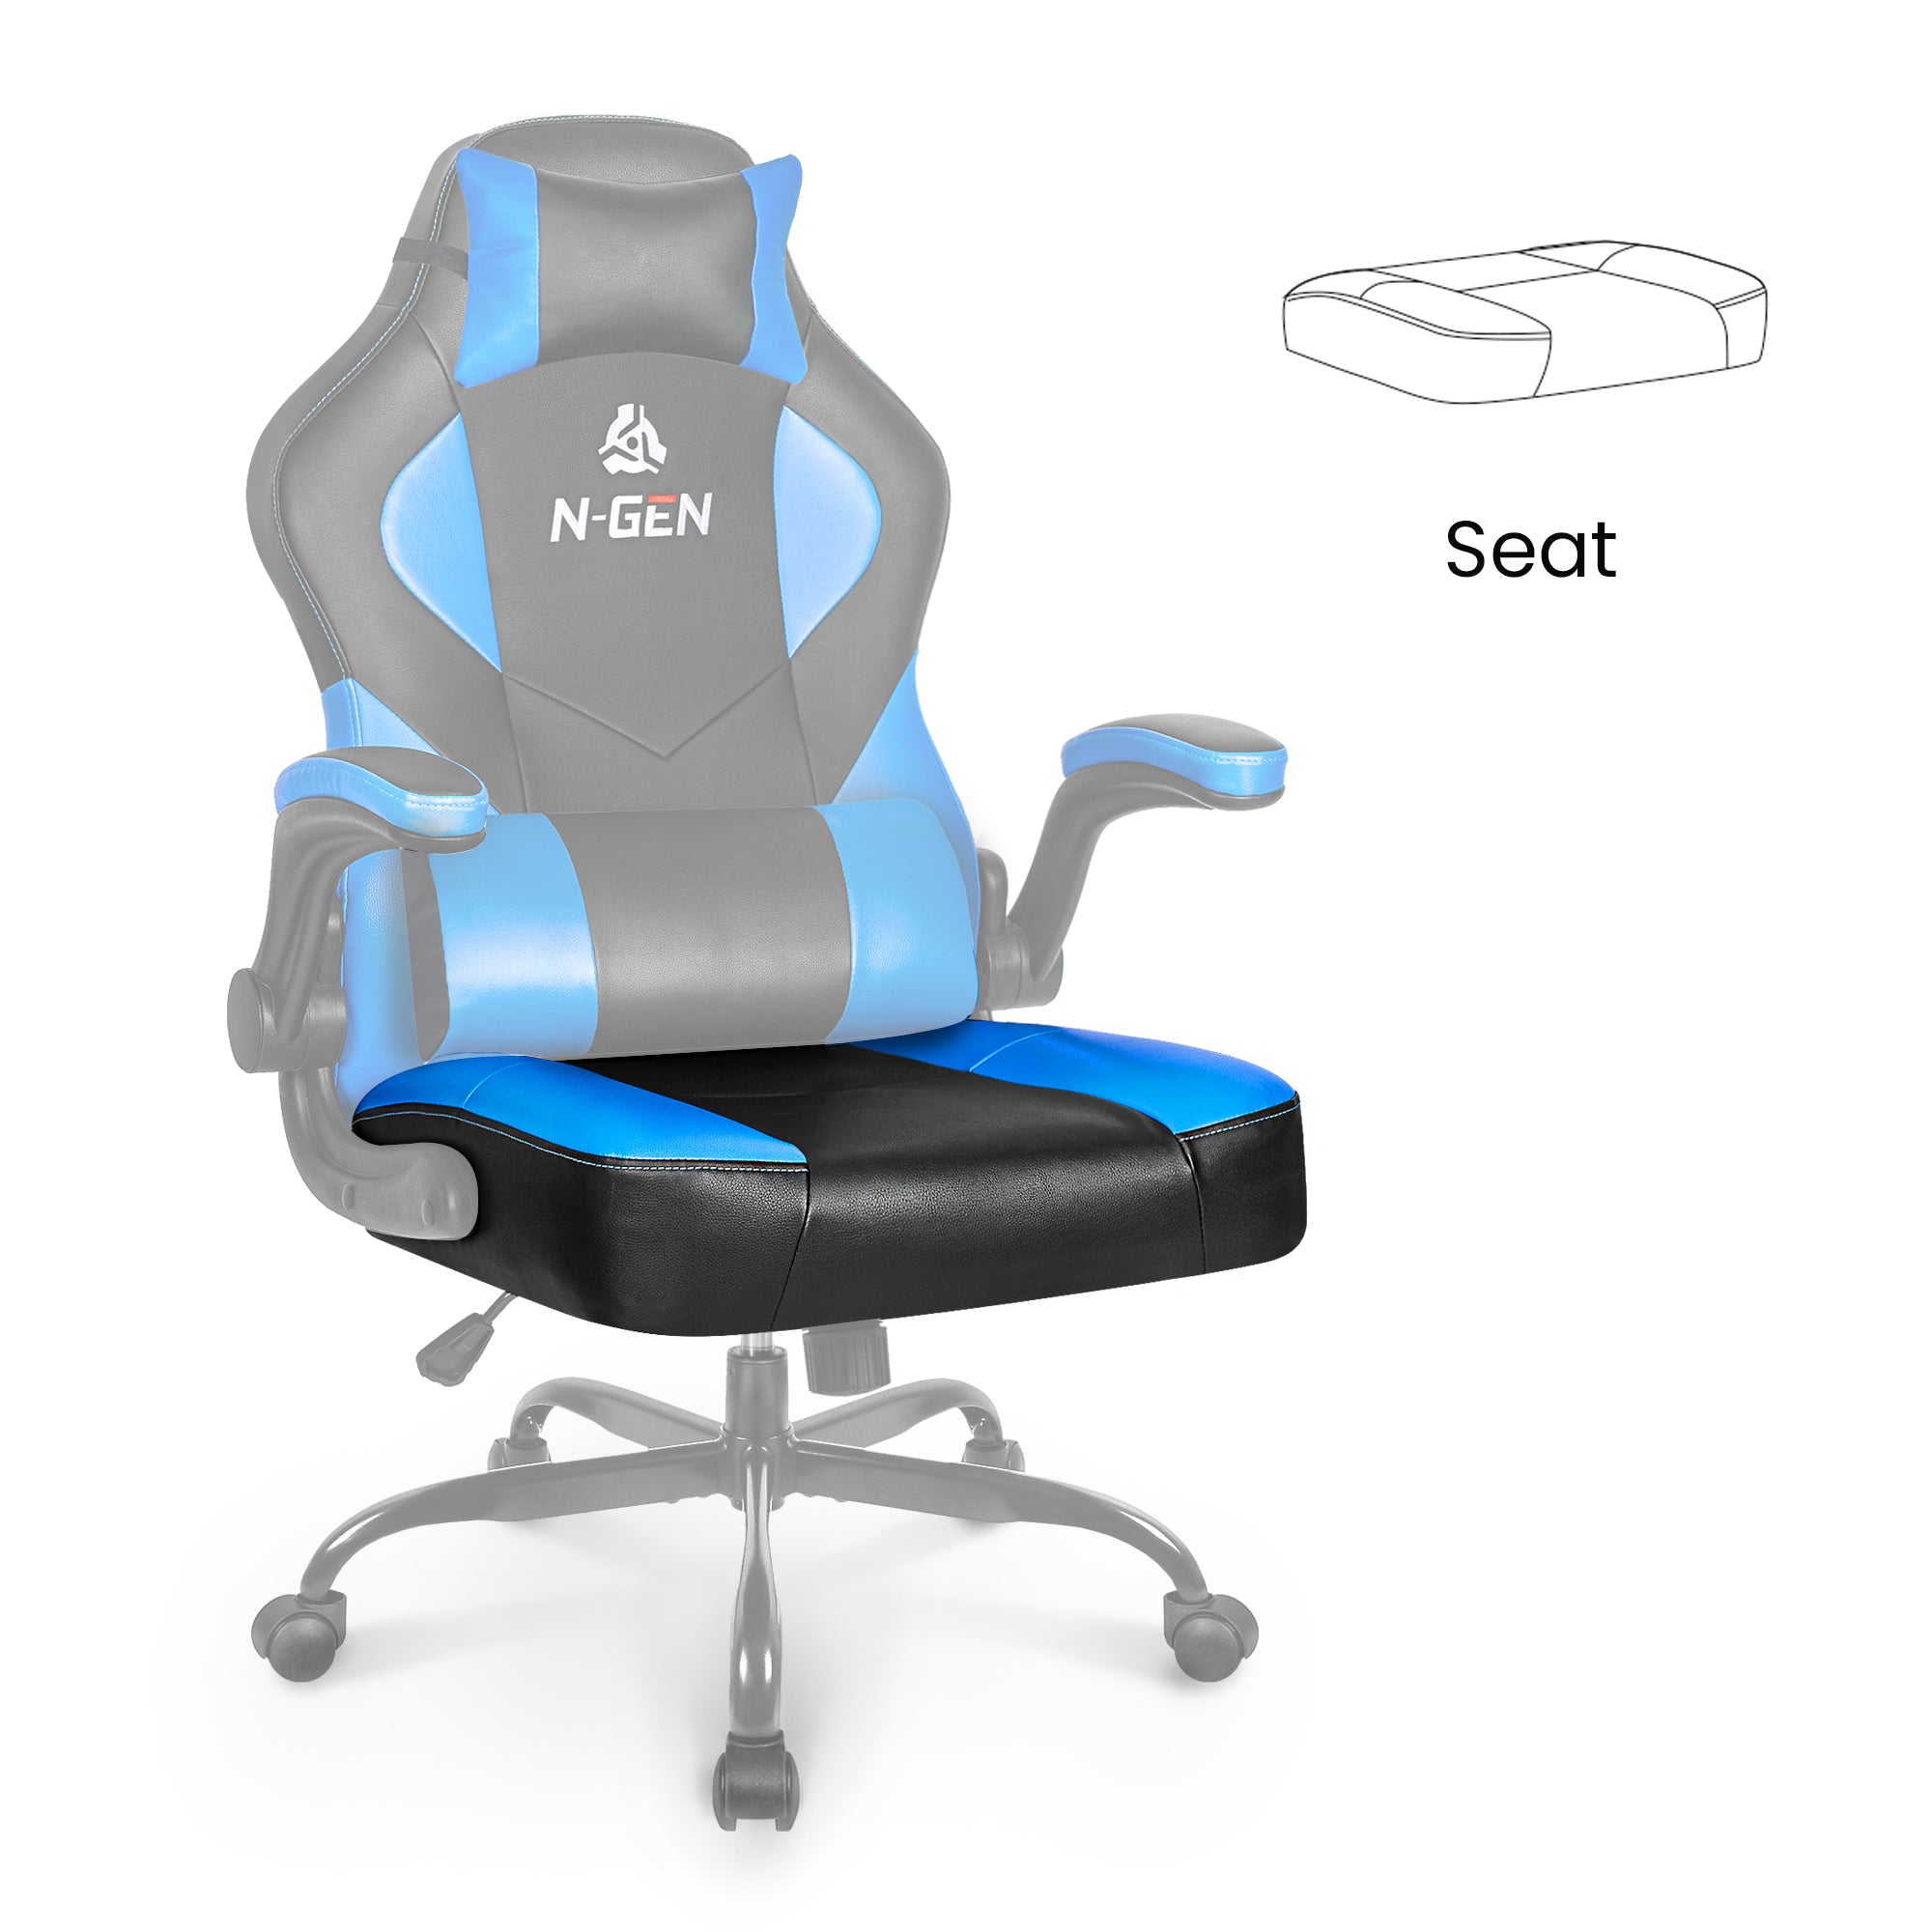 [part] Levis Seat